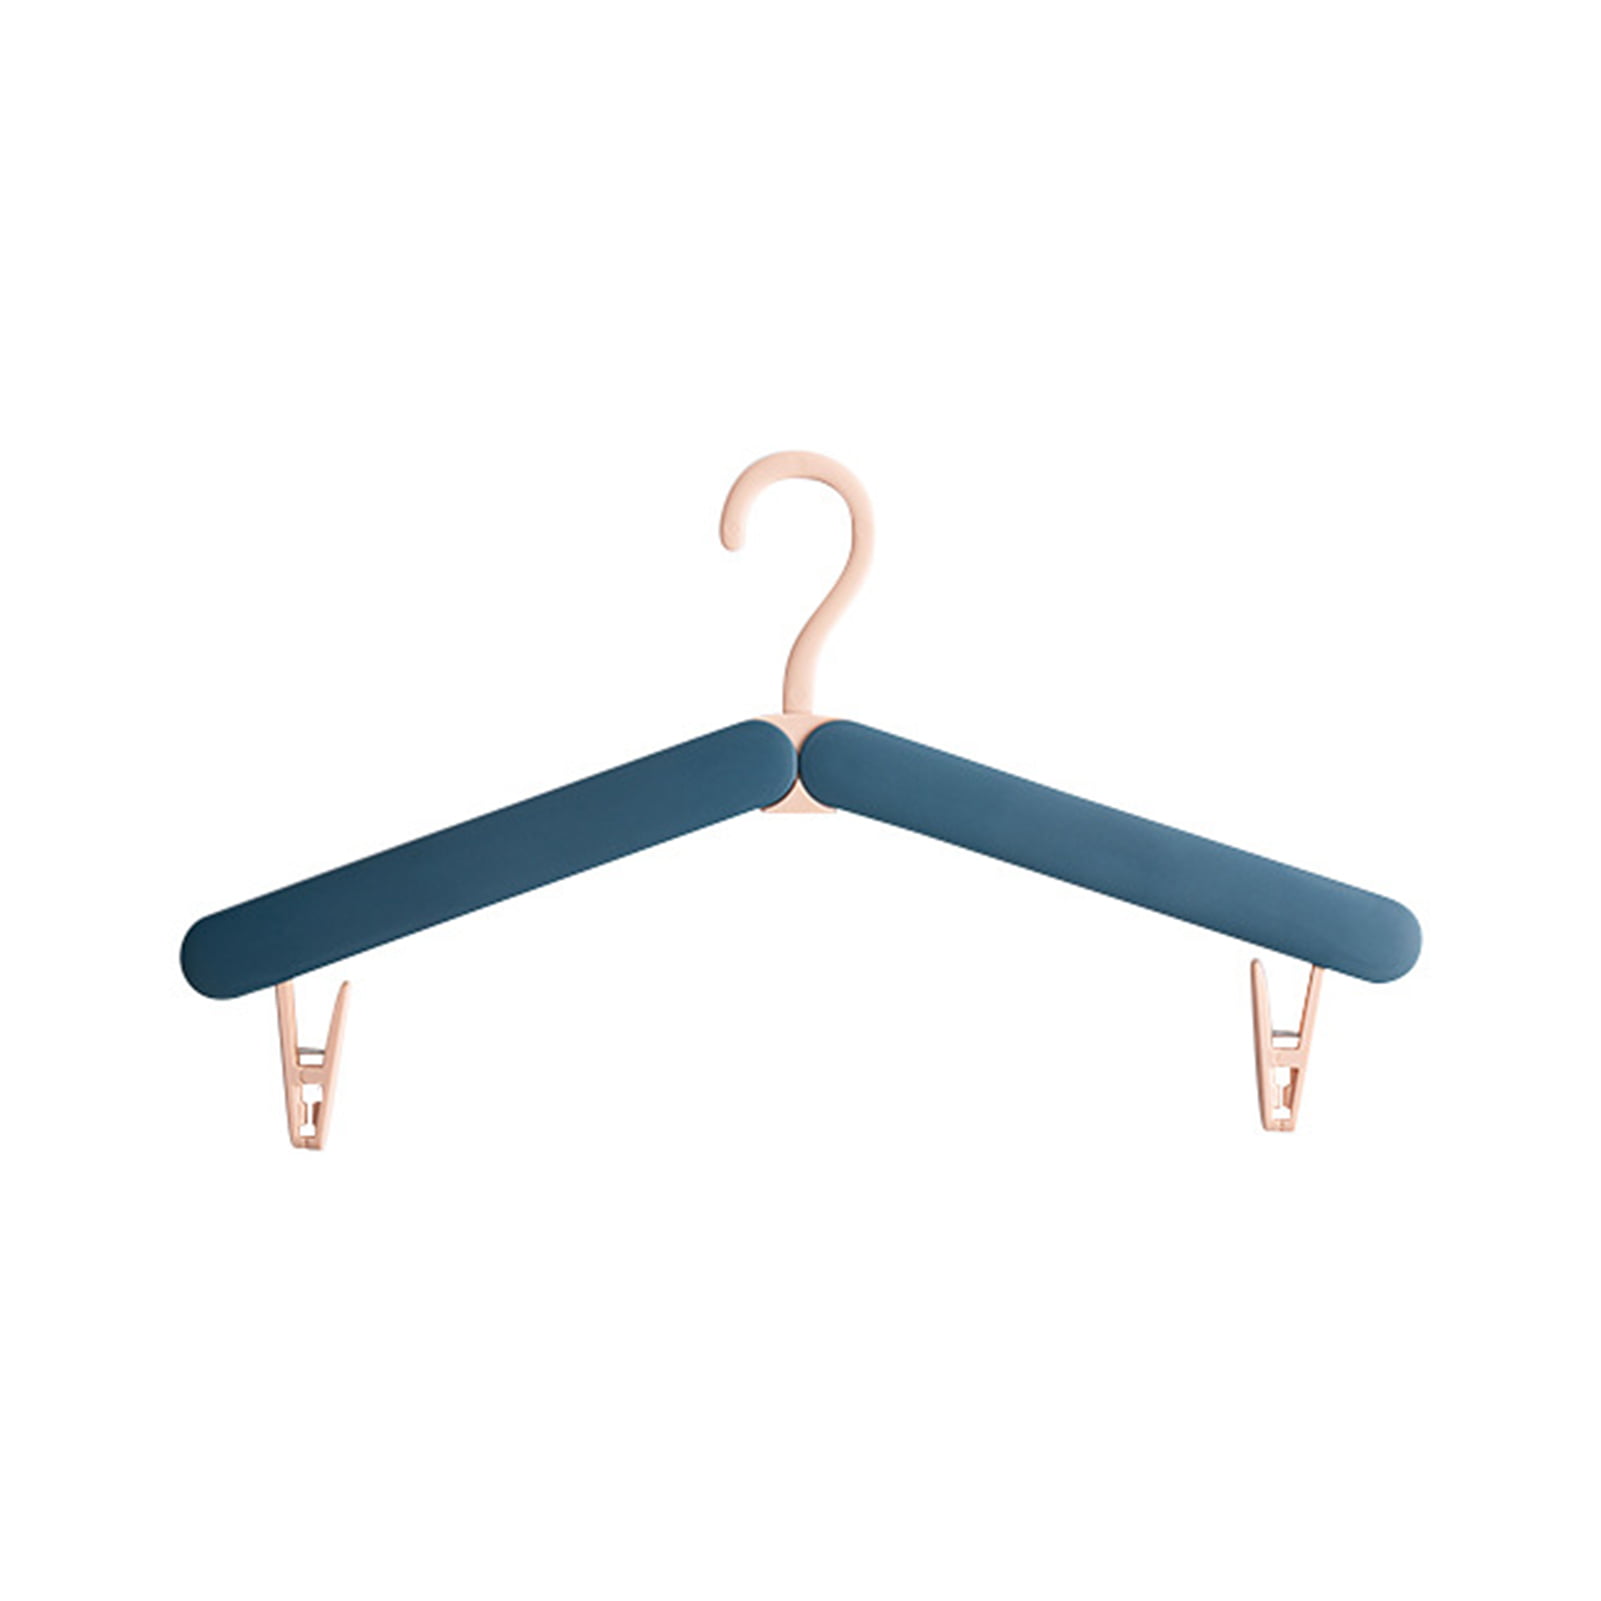 Foldable Coat Hanger tester by Bluewar